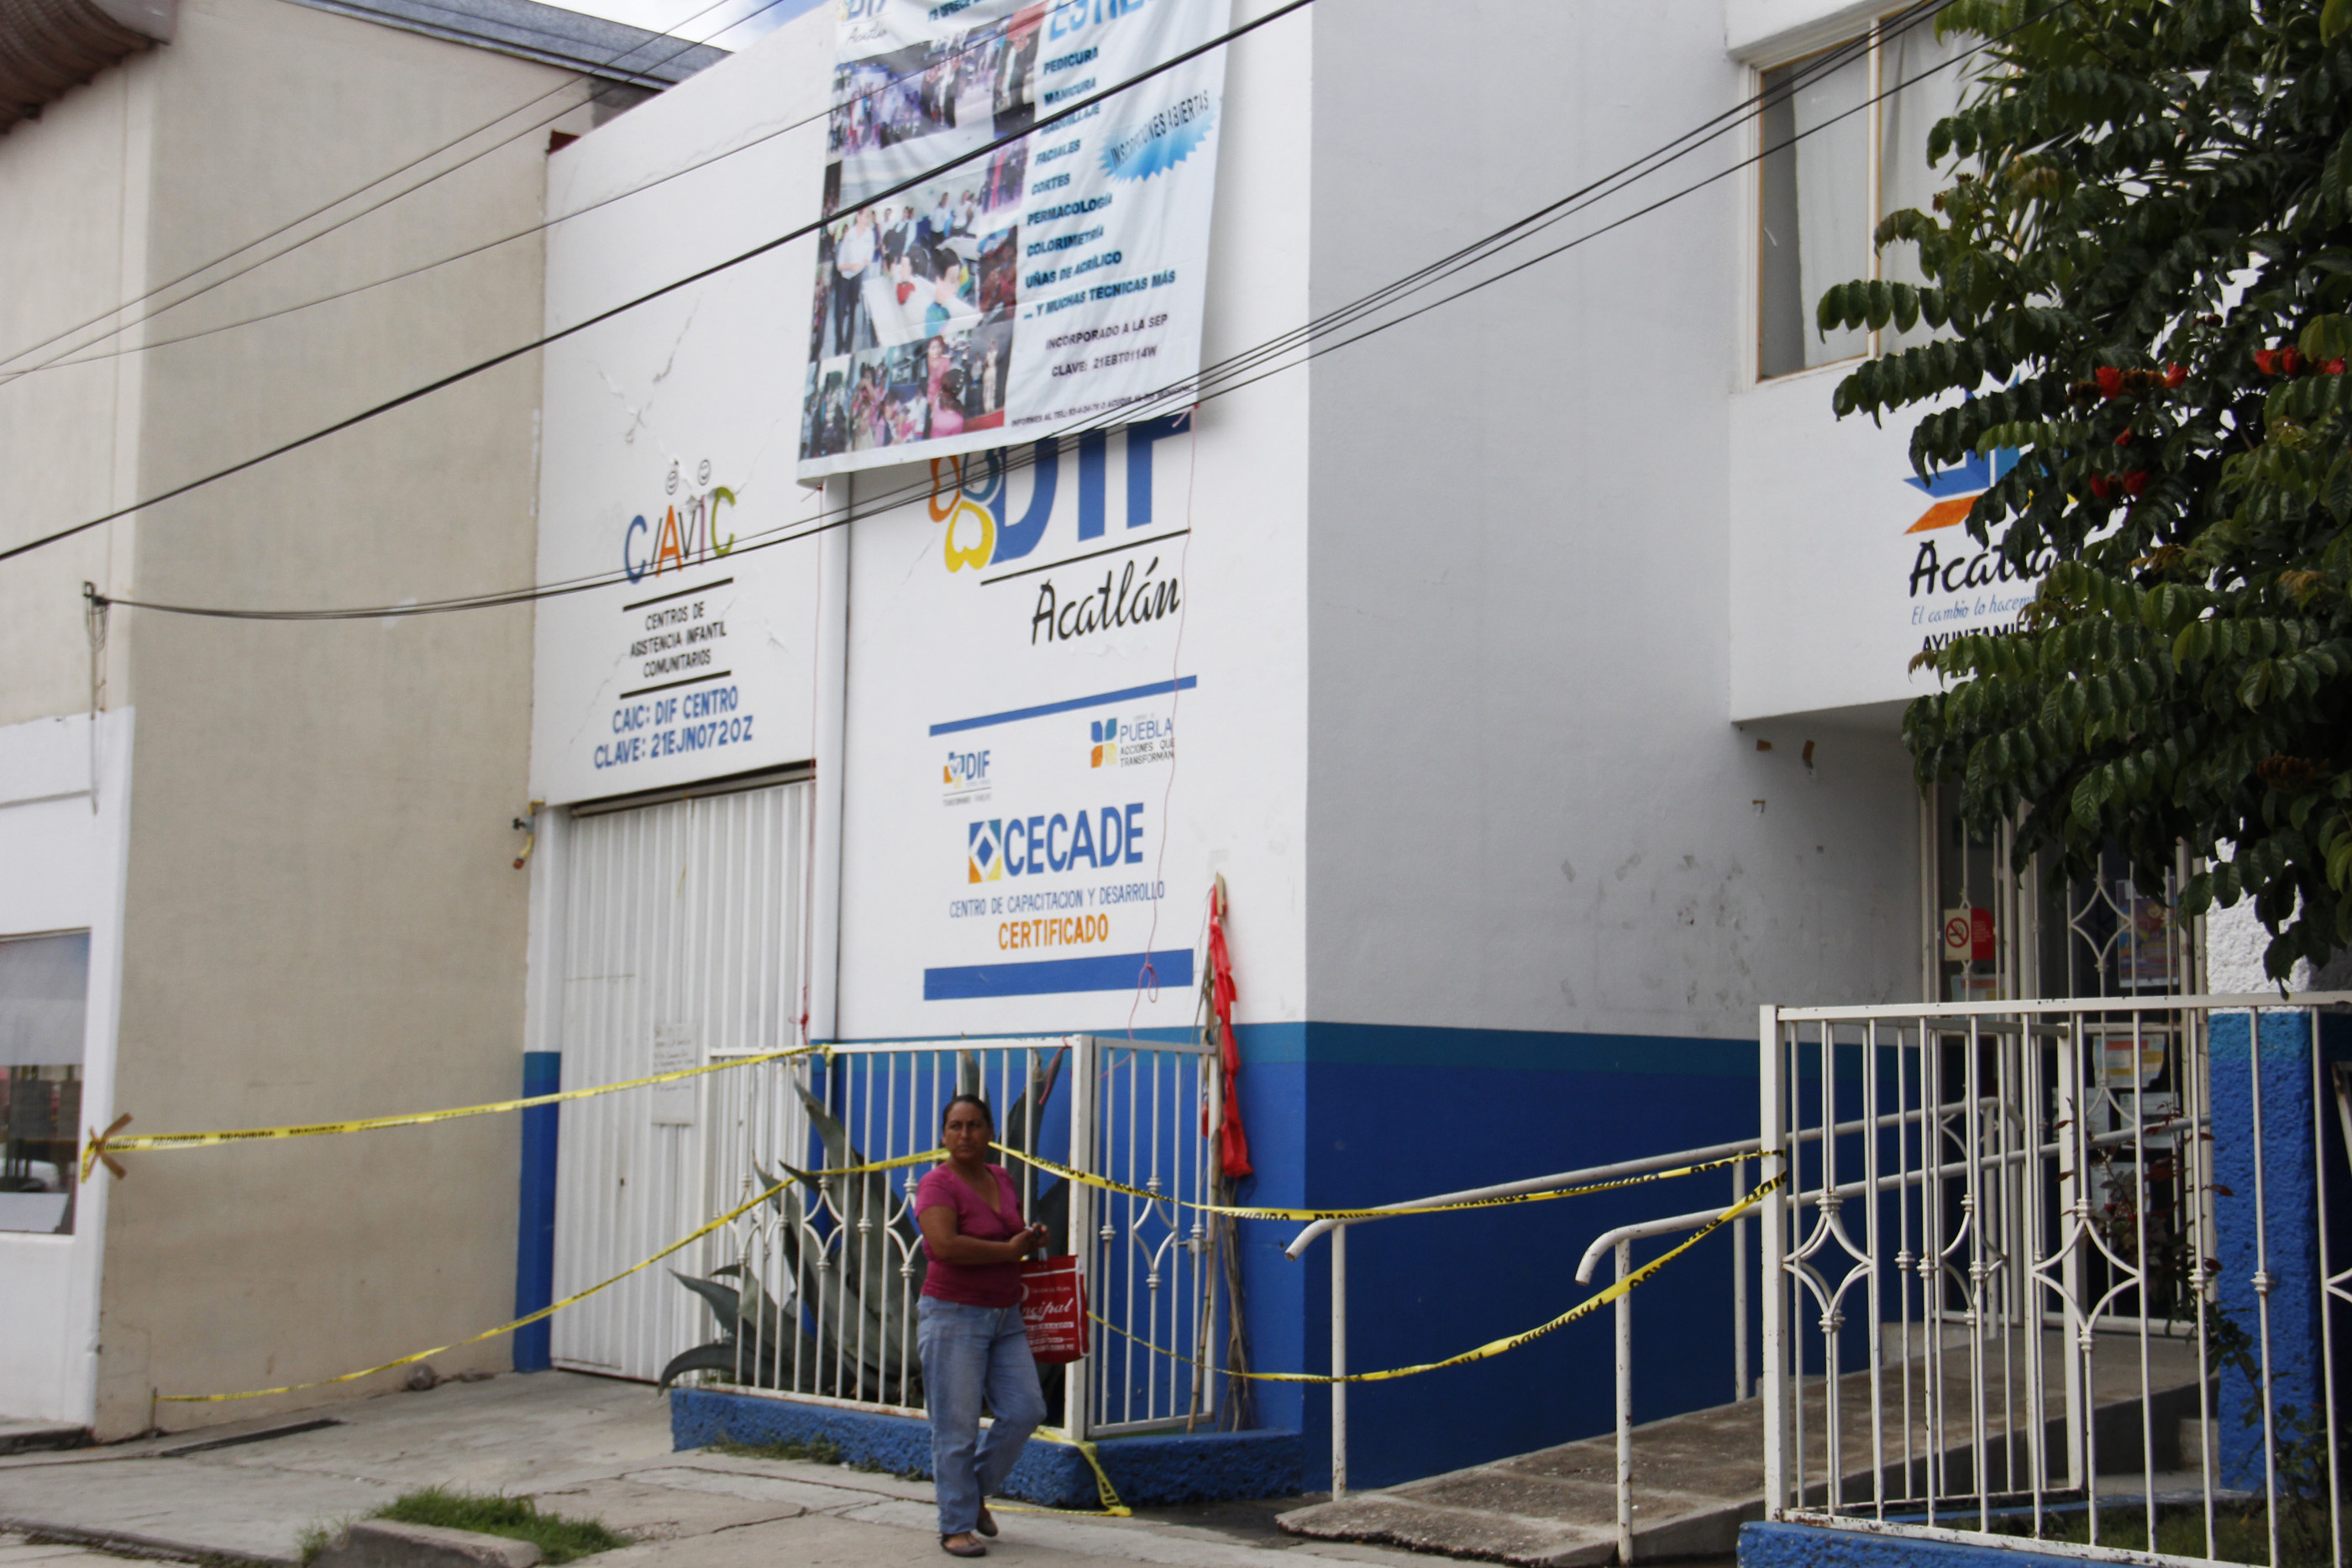 Sedatu y ayuntamiento difieren en casas dañadas en Acatlán